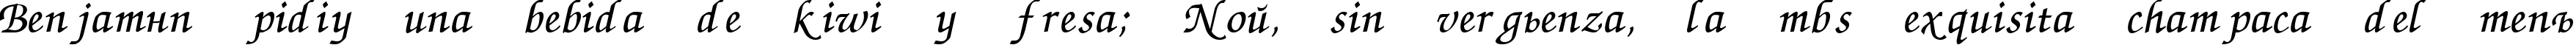 Пример написания шрифтом ZapfChancery Cyrillic Italic текста на испанском